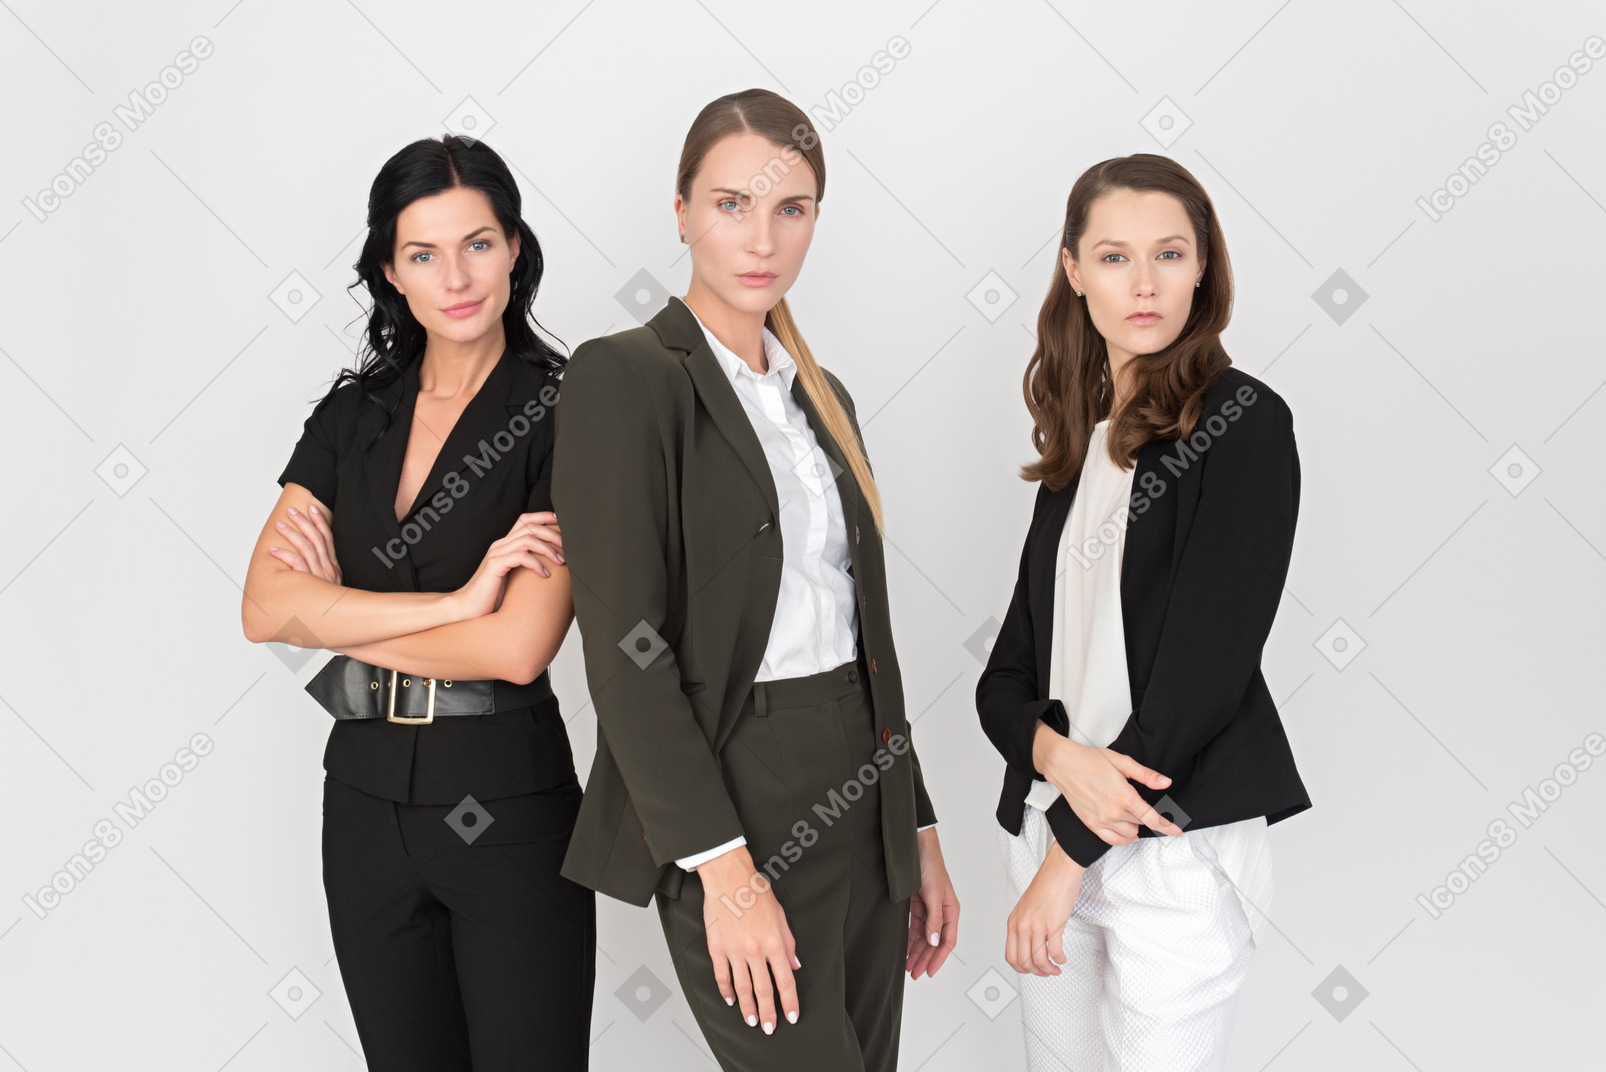 Equipe feminina pronta para enfrentar todas as lutas de trabalho